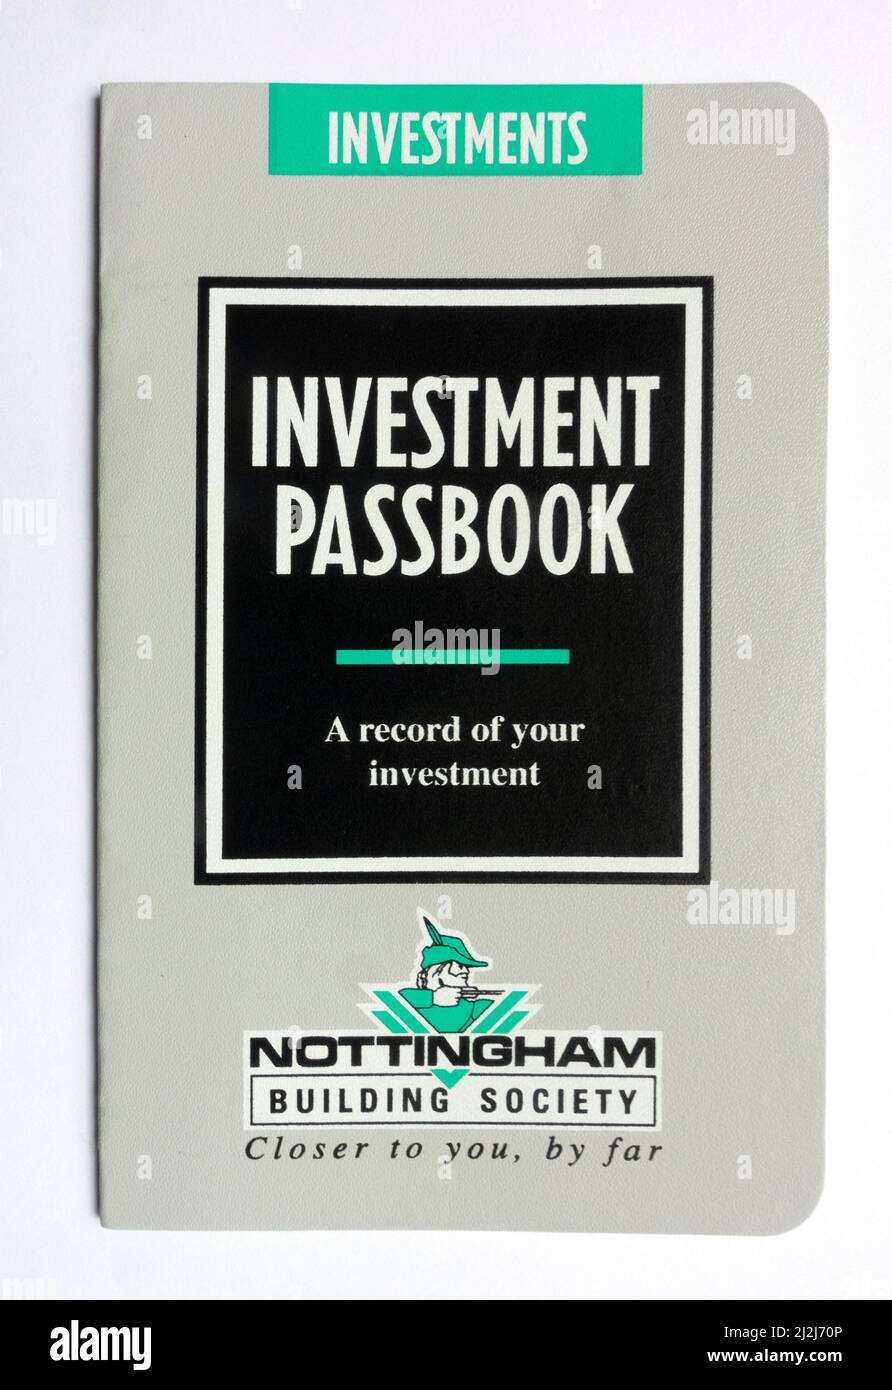 Cubierta de un antiguo cuaderno de inversiones para la Nottingham Building Society. La cuenta se abrió en 1995. Foto de stock